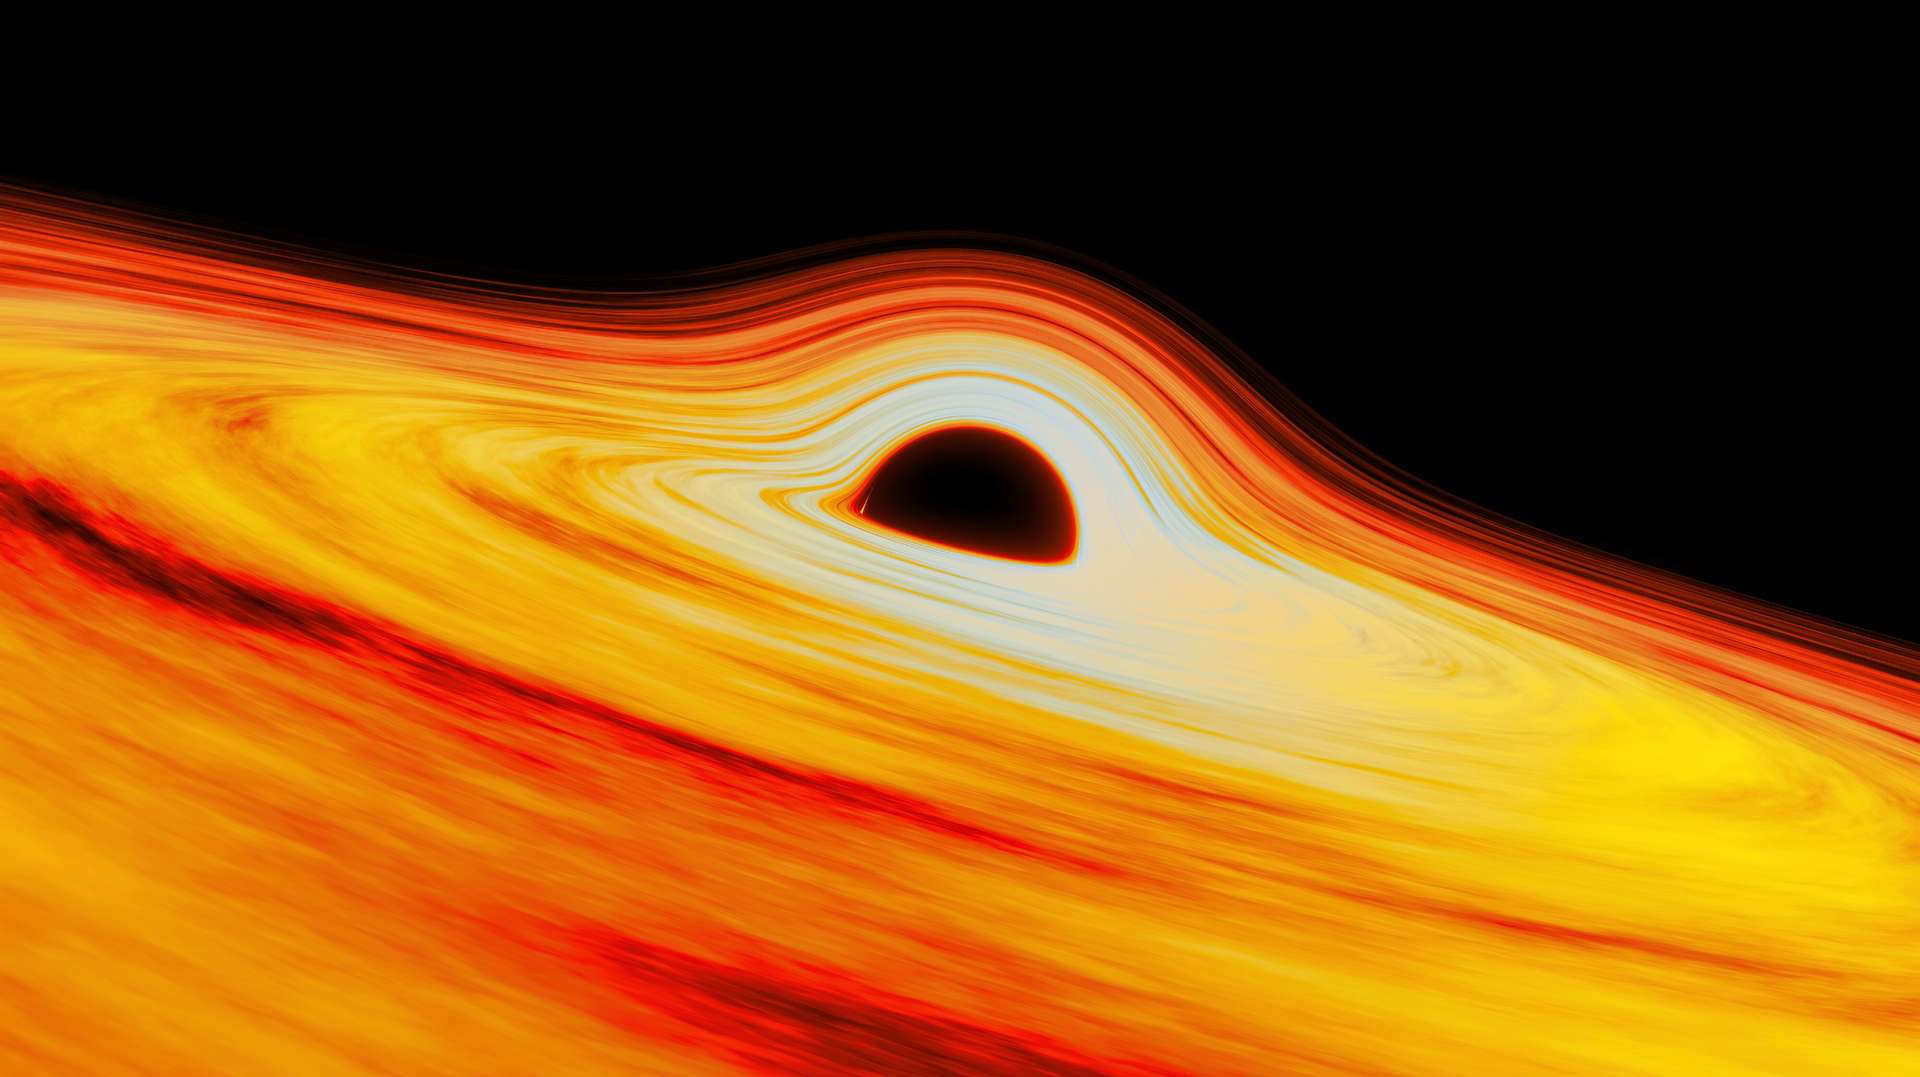 Illustration de Sagittarius A*, le trou noir supermassif qui trône au centre de la Voie lactée. © International Gemini Observatory, NOIRLab, NSF, AURA, J. da Silva, (Spaceengine)